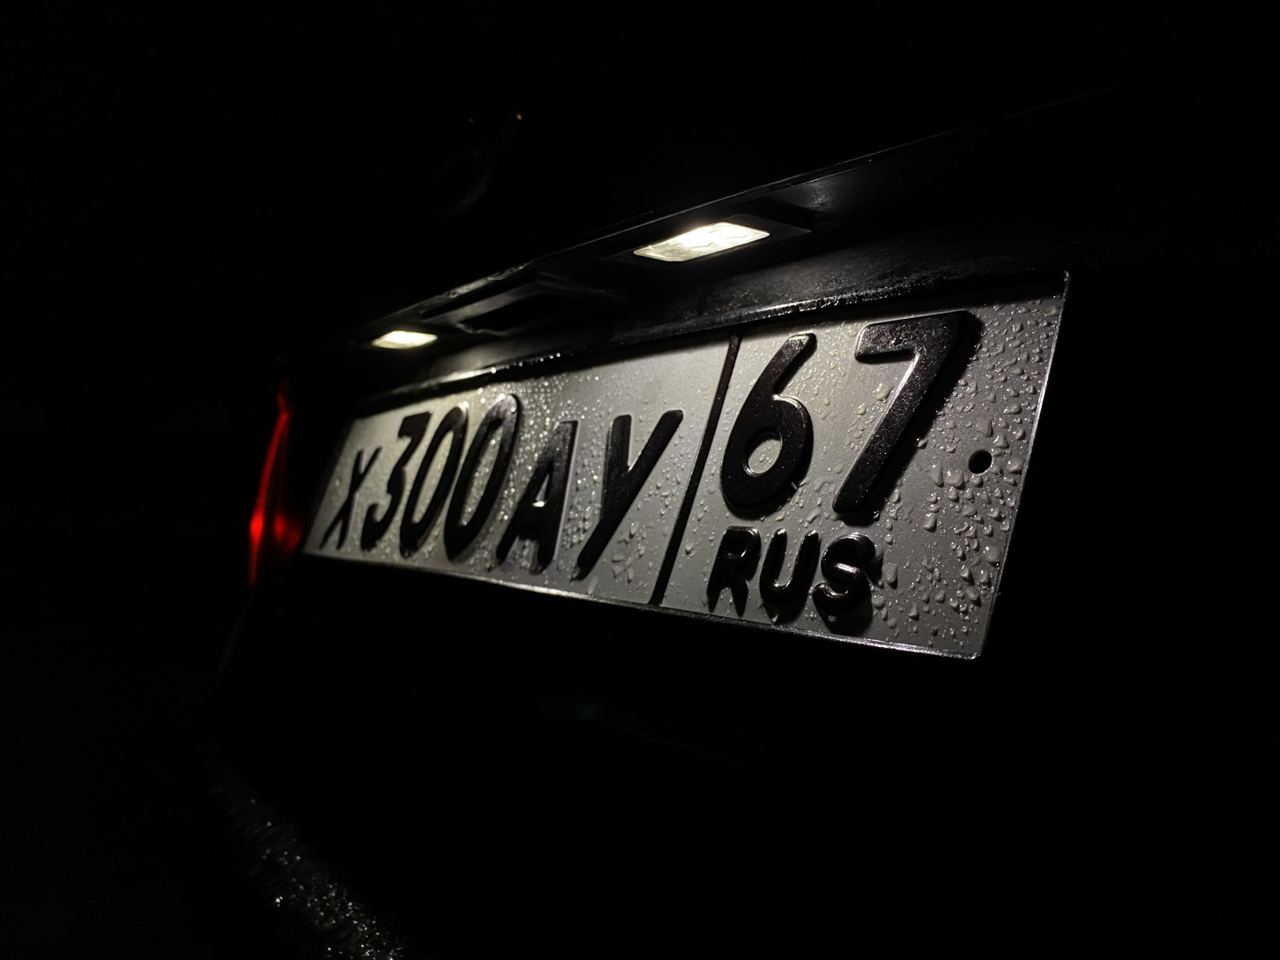 Авто с российскими номерами должны покинуть Литву до 11 марта, иначе они будут конфискованы